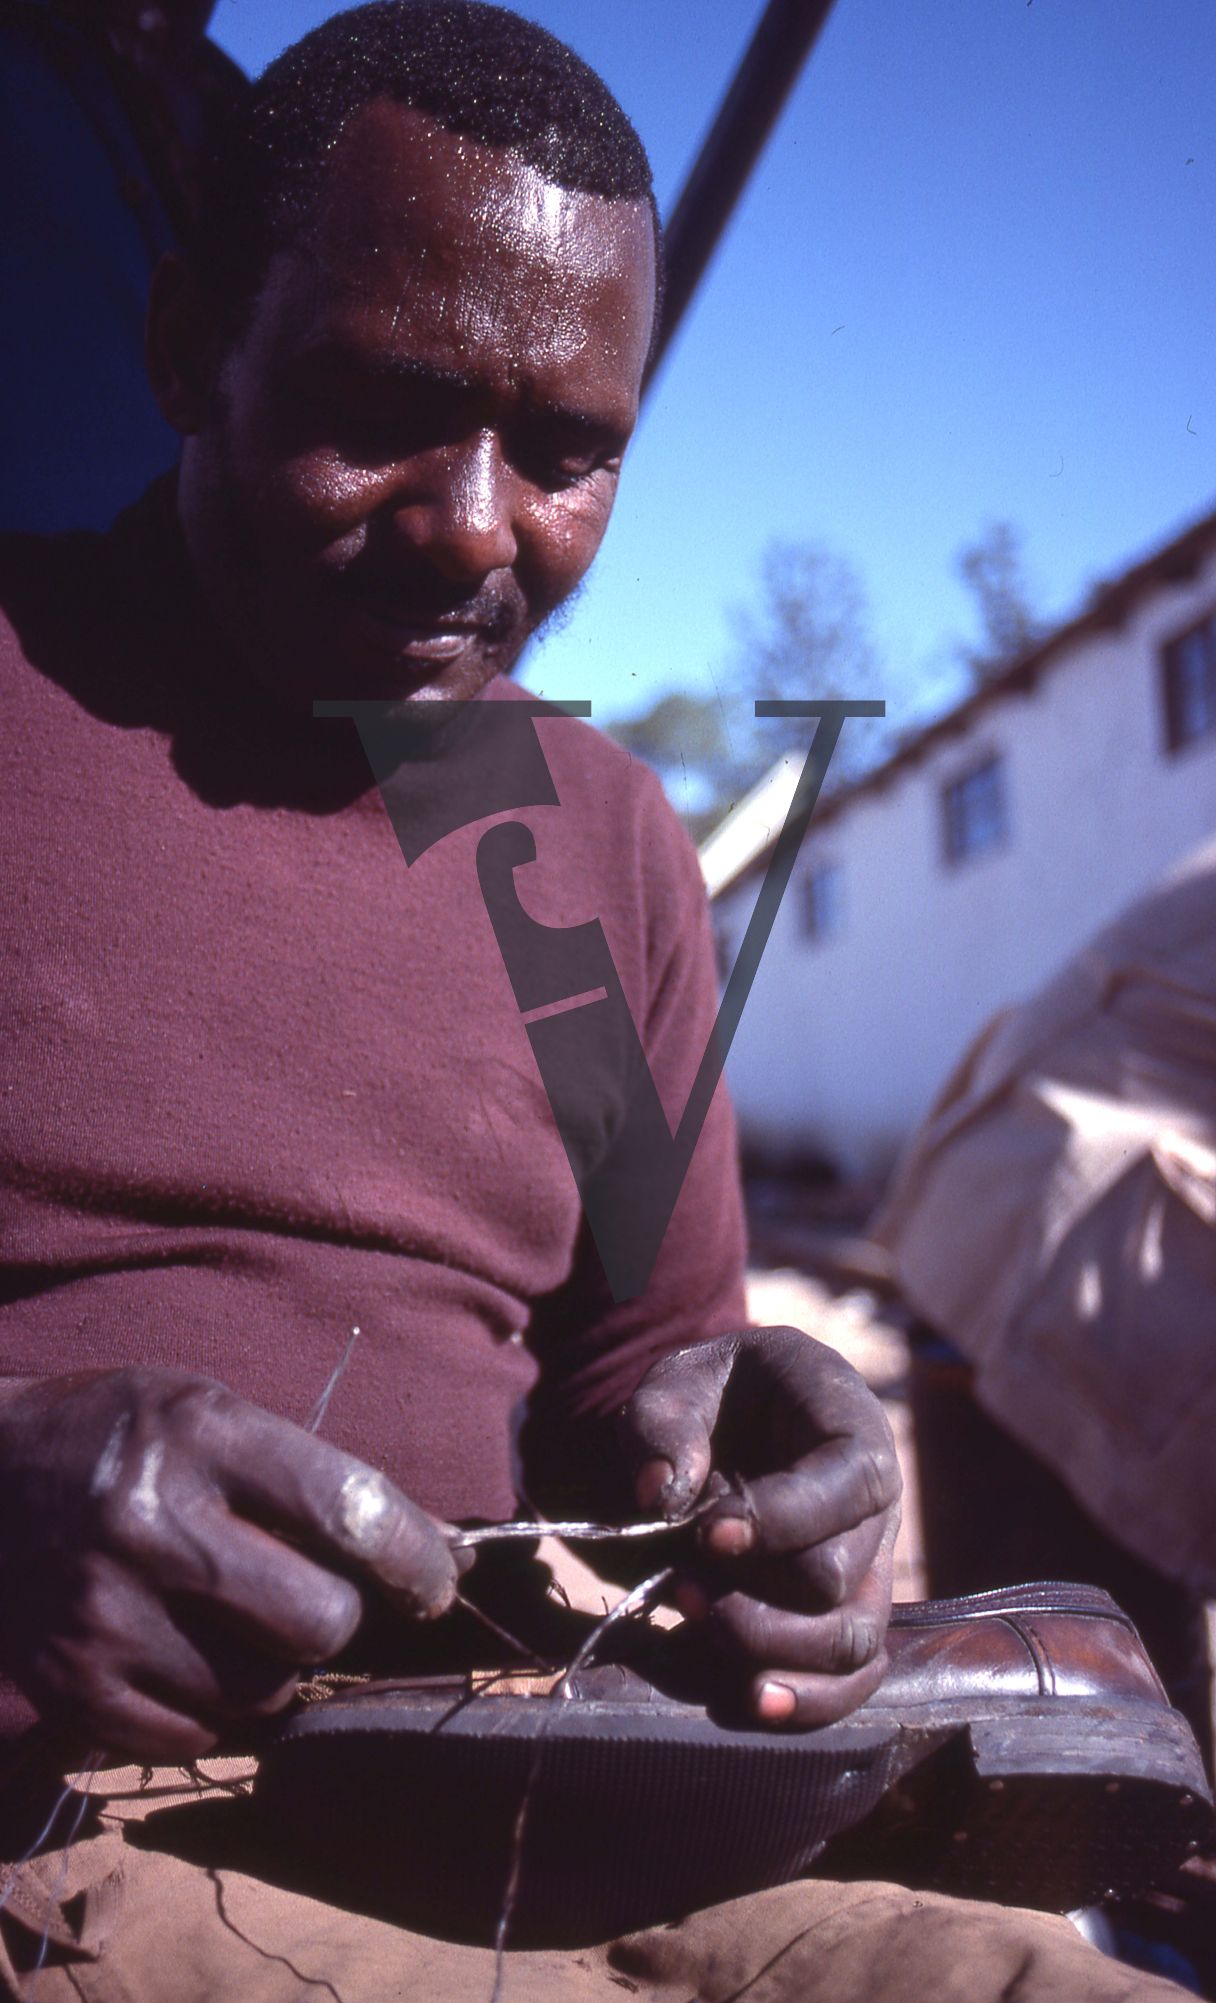 South Africa, Transkei, man repairing shoe, mid-shot.